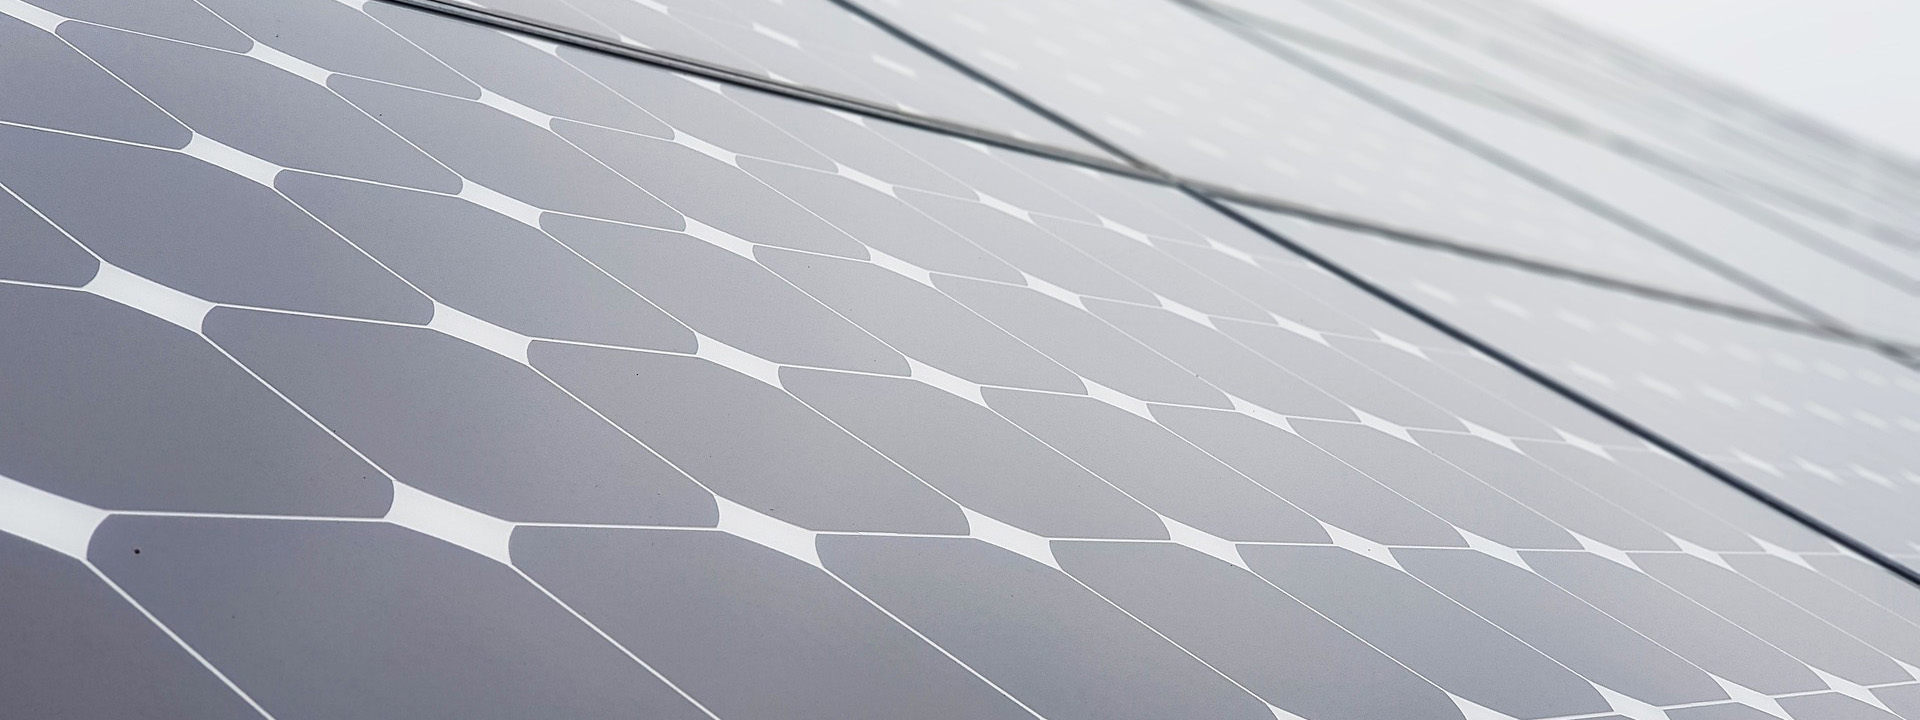 Fotovoltaico con accumulo: come funziona e vantaggi. - GDE